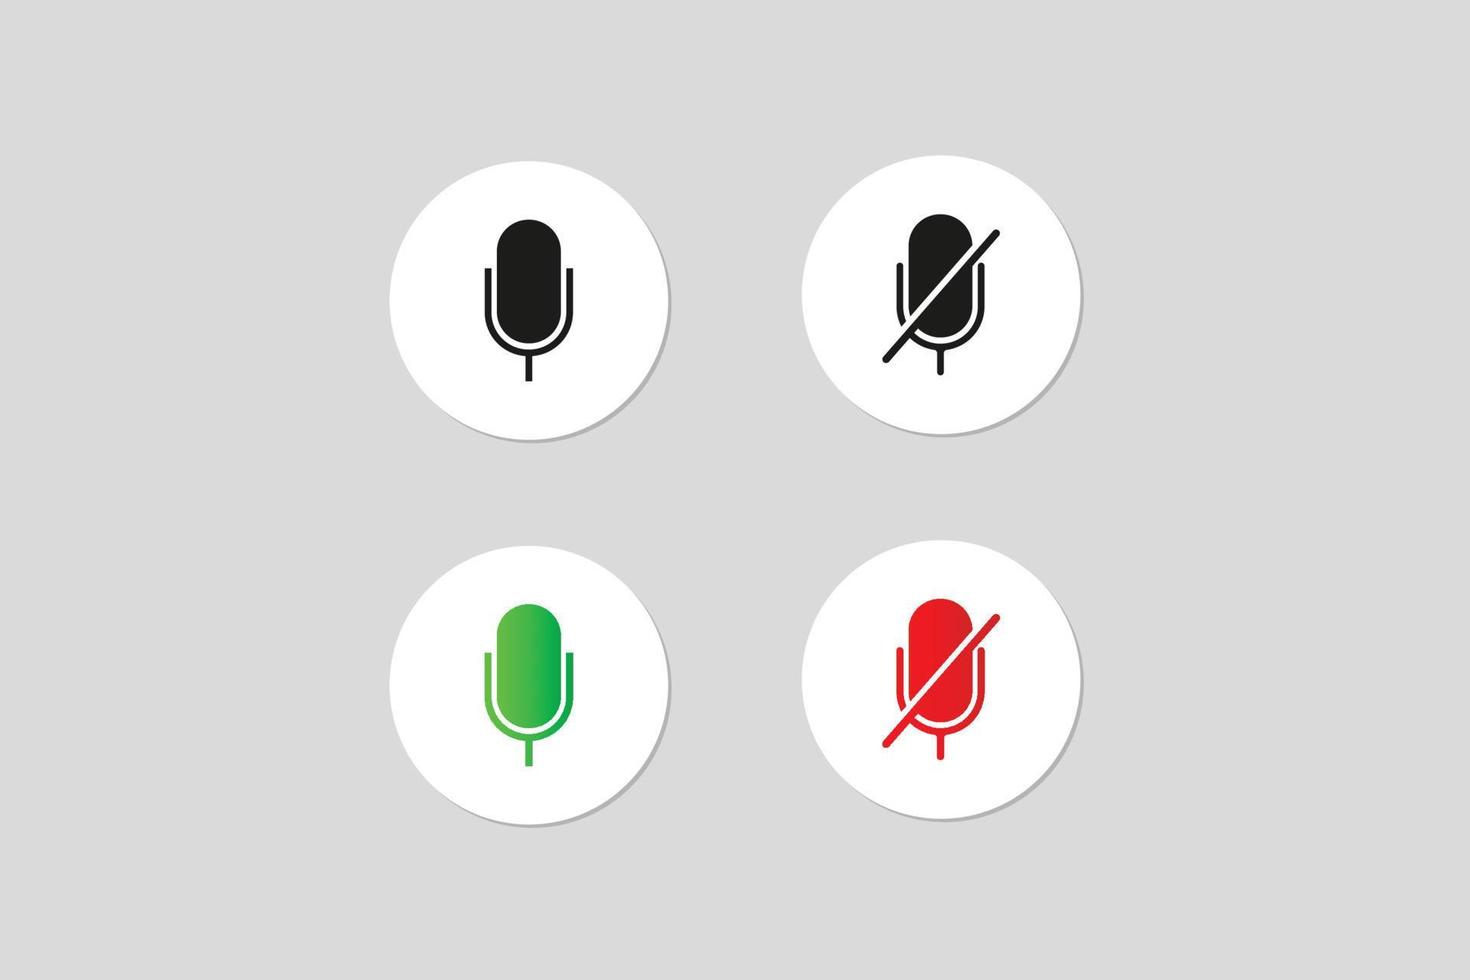 som do microfone dentro e fora do vetor premium de botões de ícones verdes e vermelhos.